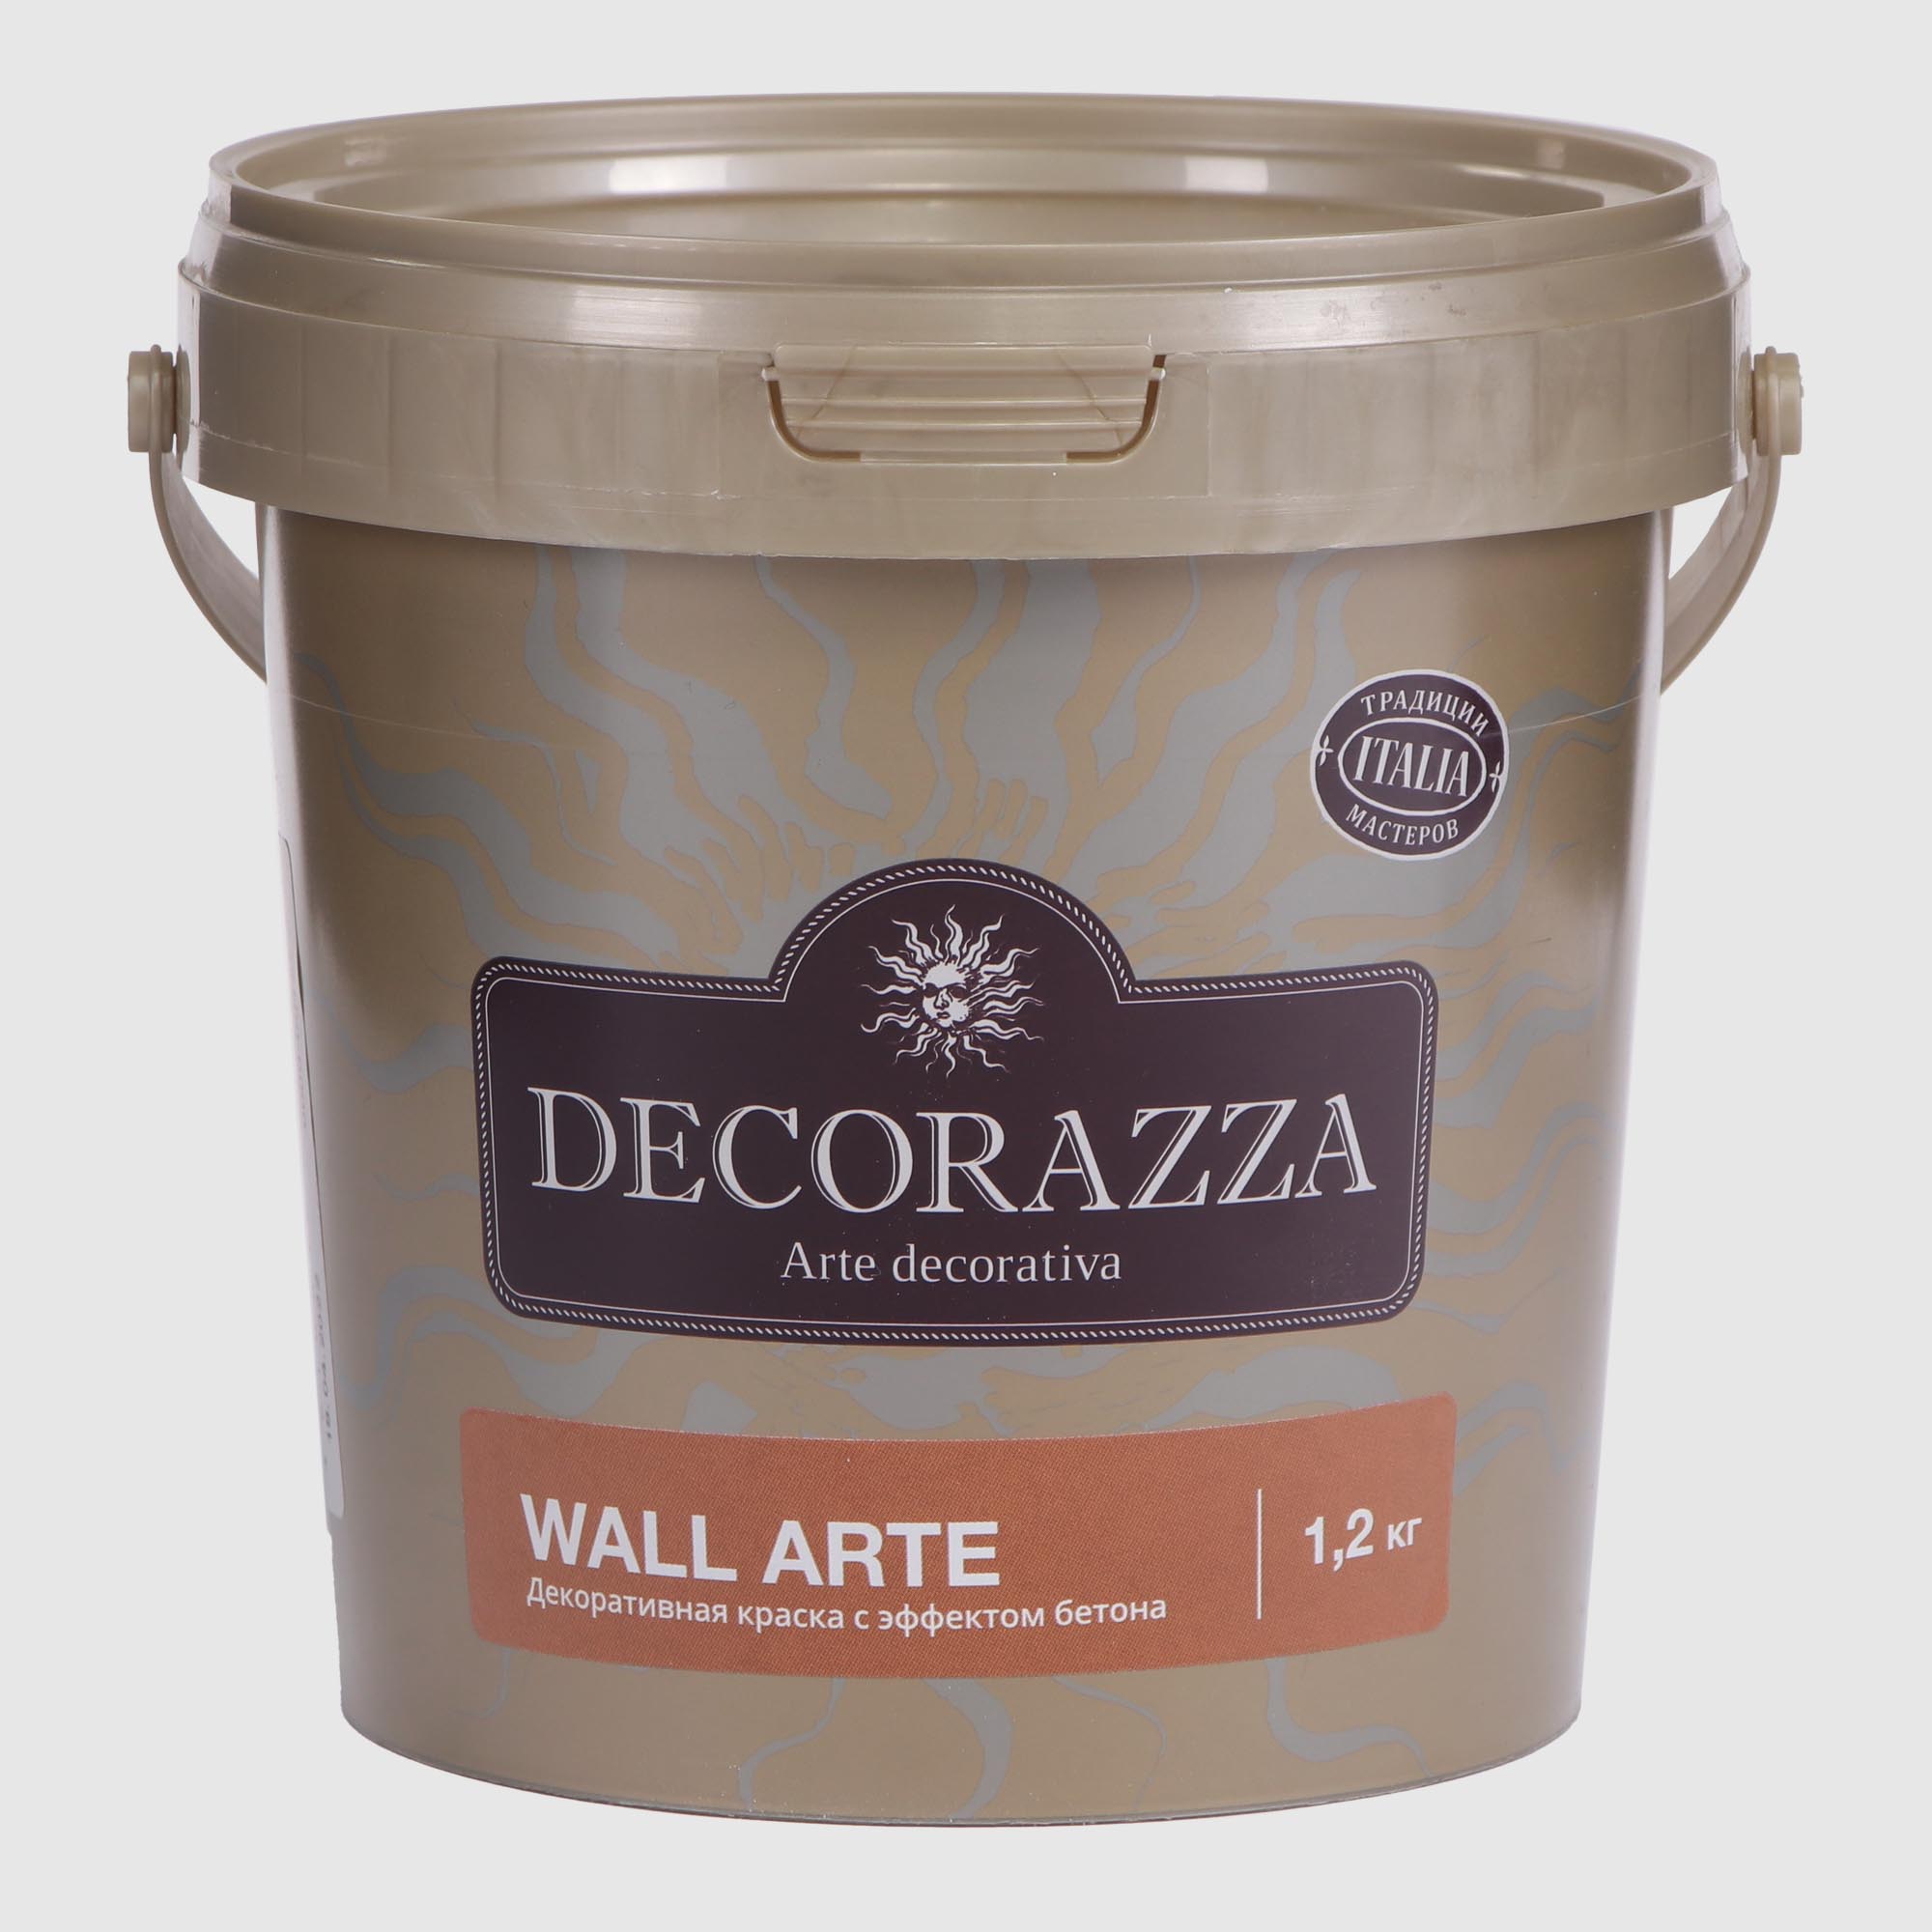 Покрытие Decorazza декоративное 1.2 кг покрытие декоративное rolplast claudius 2 кг